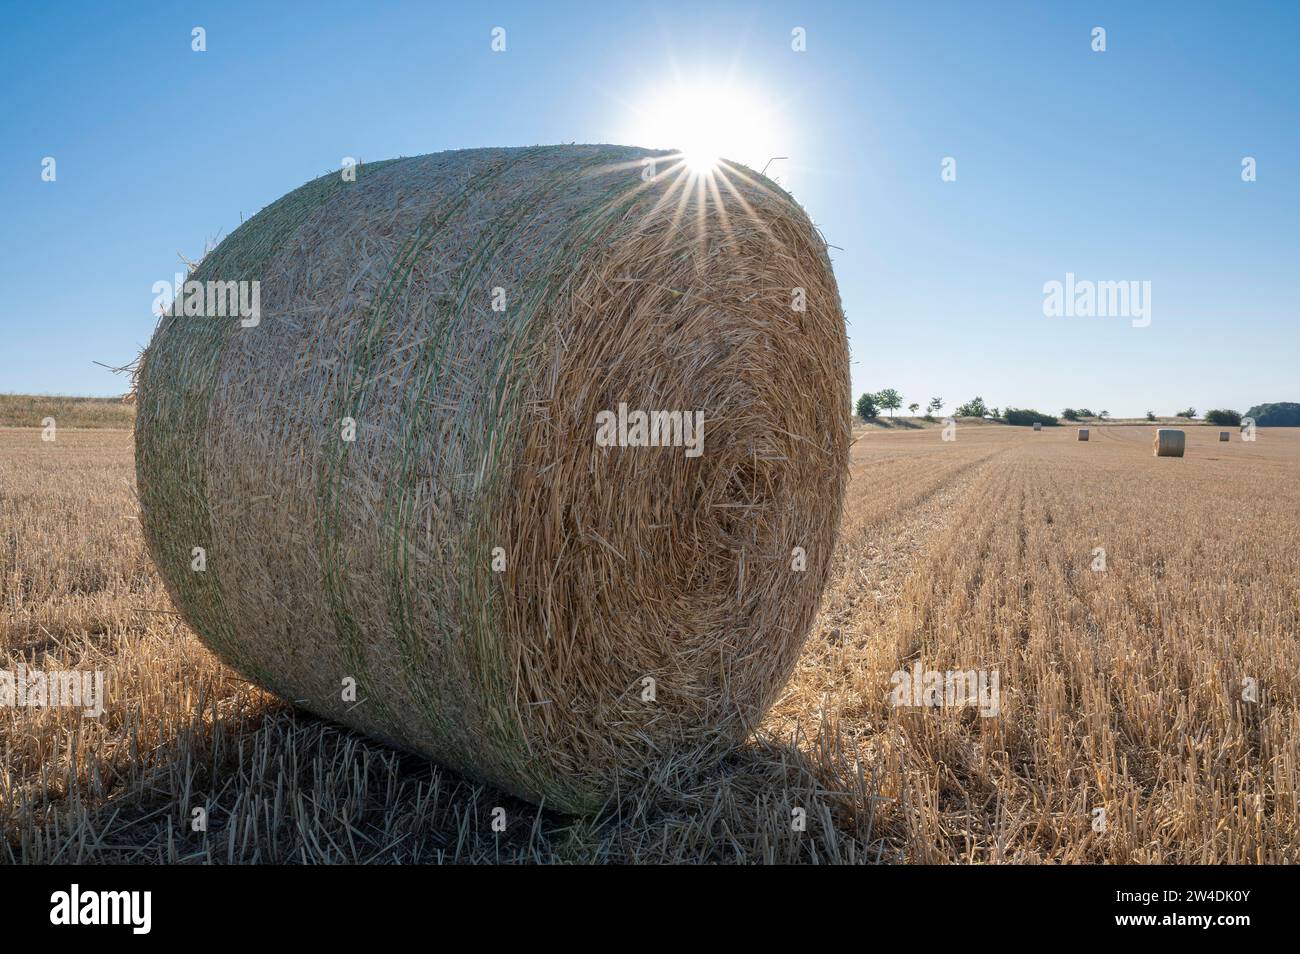 Balles de paille sur champ de céréales récoltées, rétro-éclairé avec étoile solaire, Thuringe, Allemagne Banque D'Images